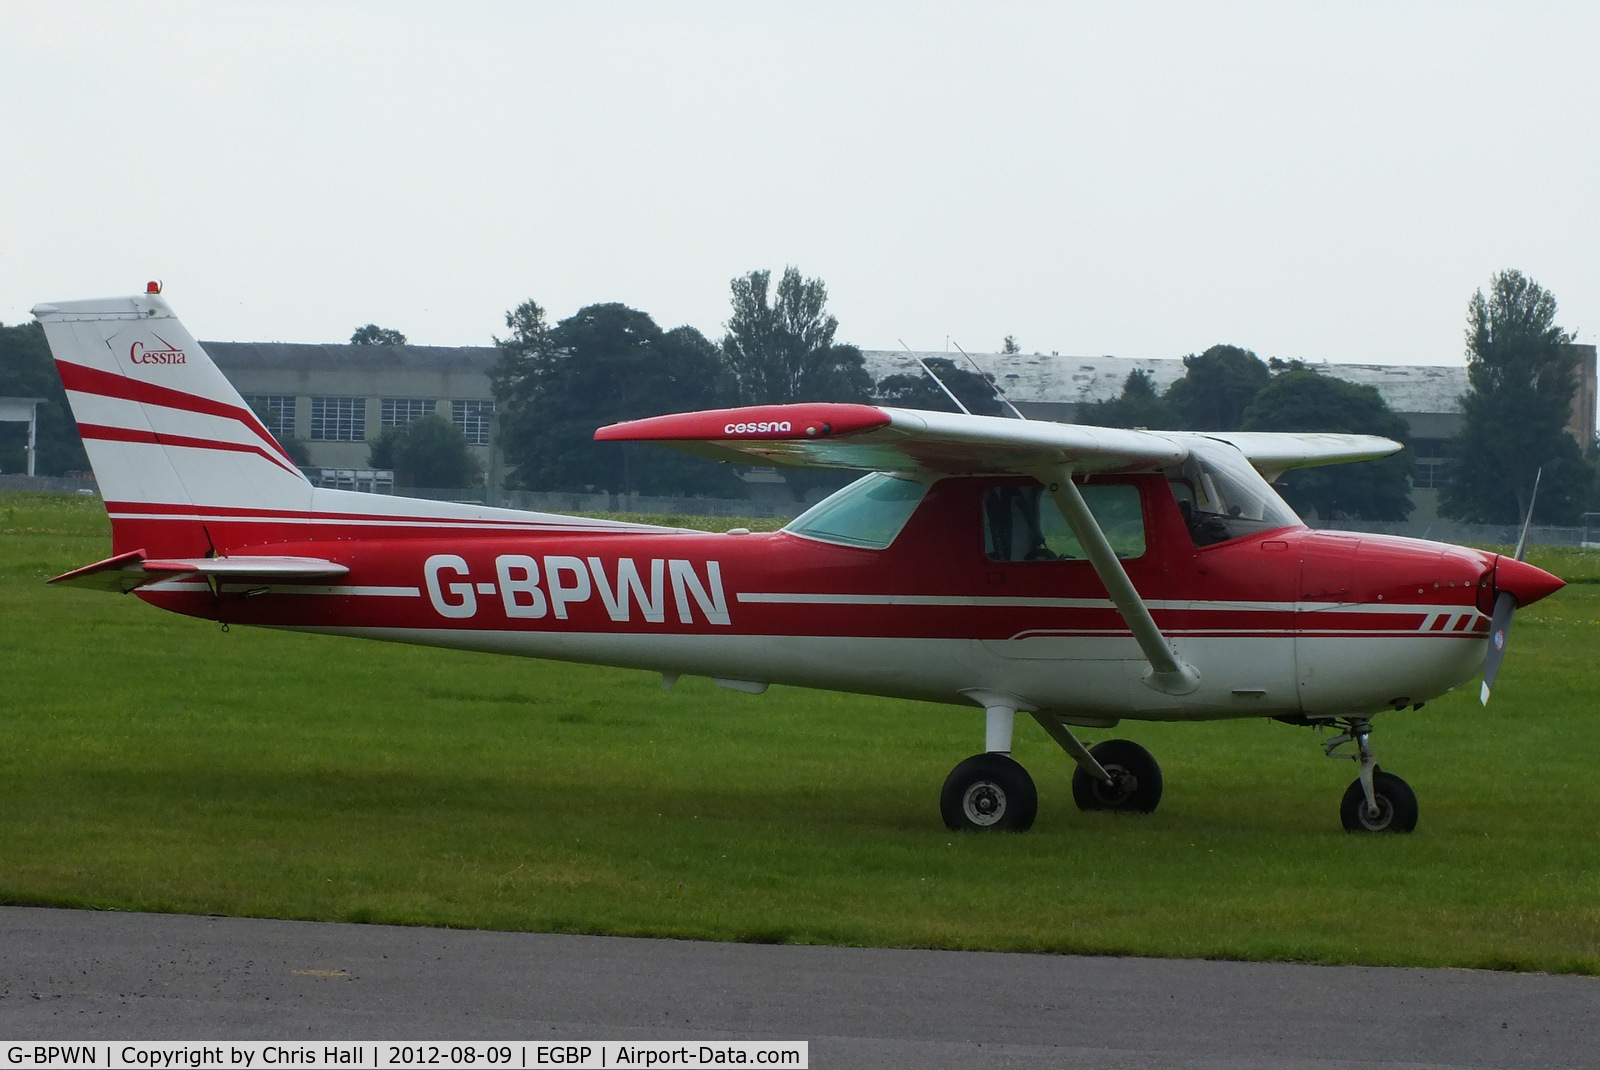 G-BPWN, 1974 Cessna 150L C/N 150-74325, at Kemble Airport